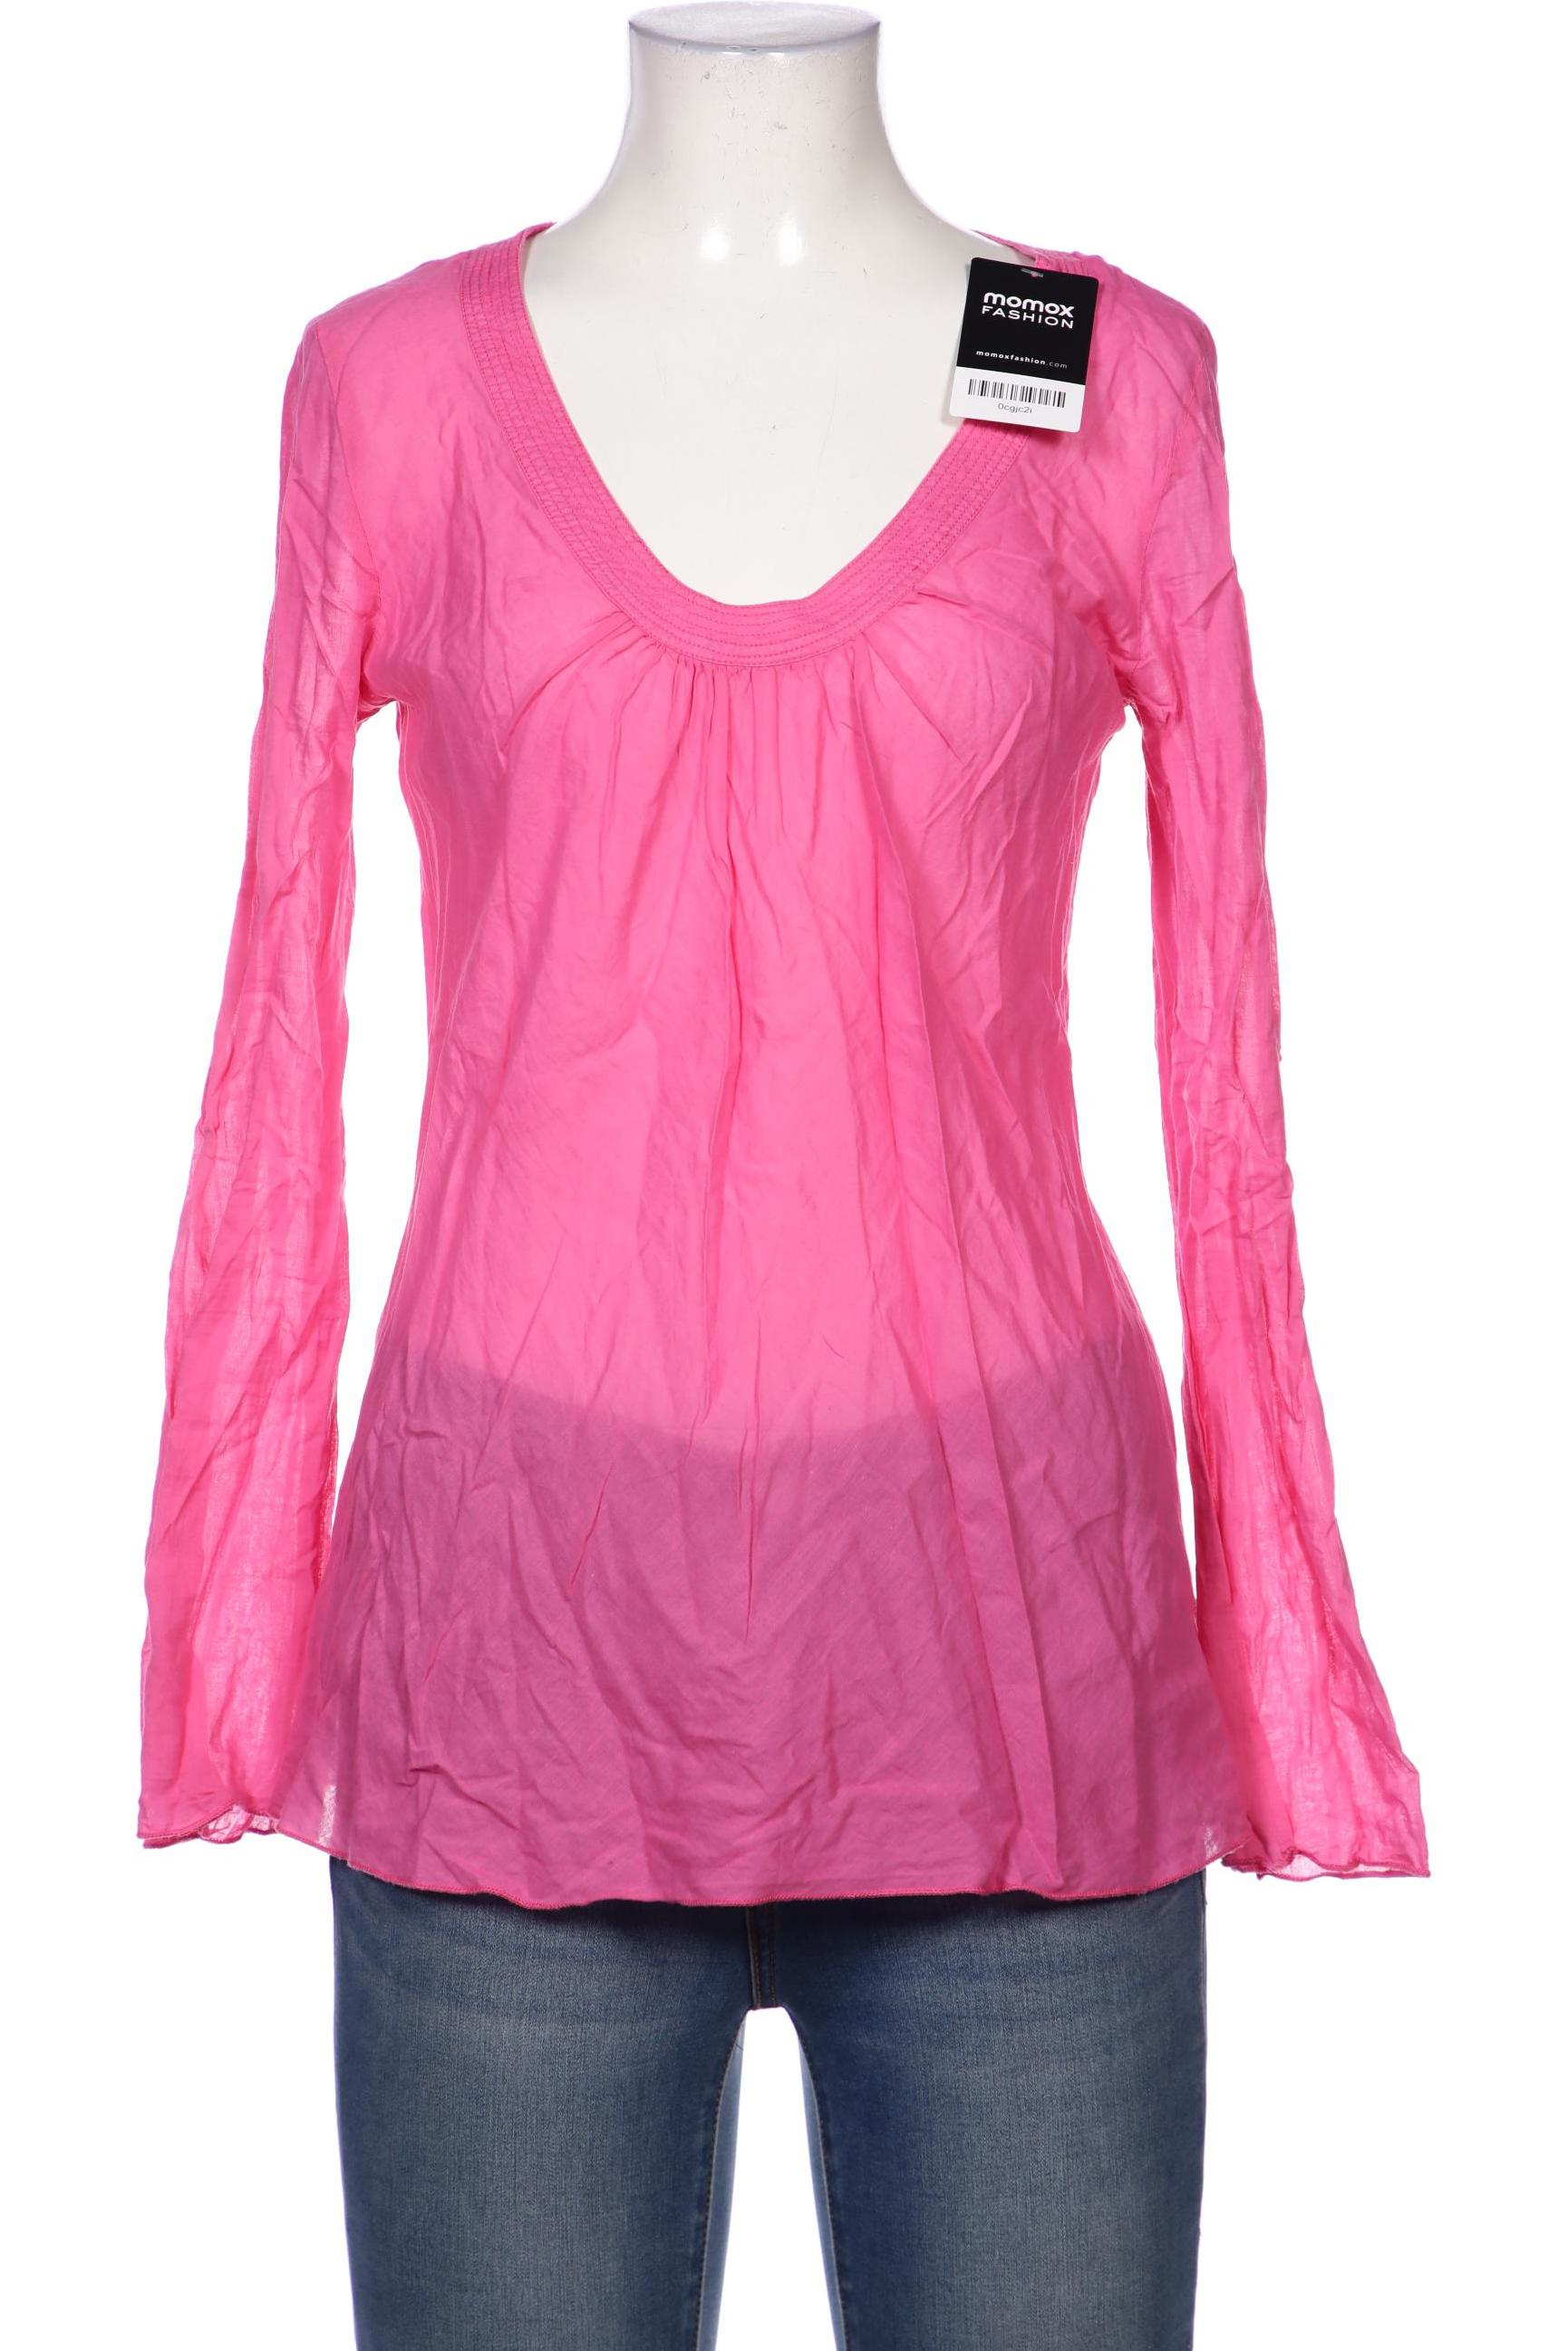 Blaumax Damen Bluse, pink, Gr. 38 von BLAUMAX